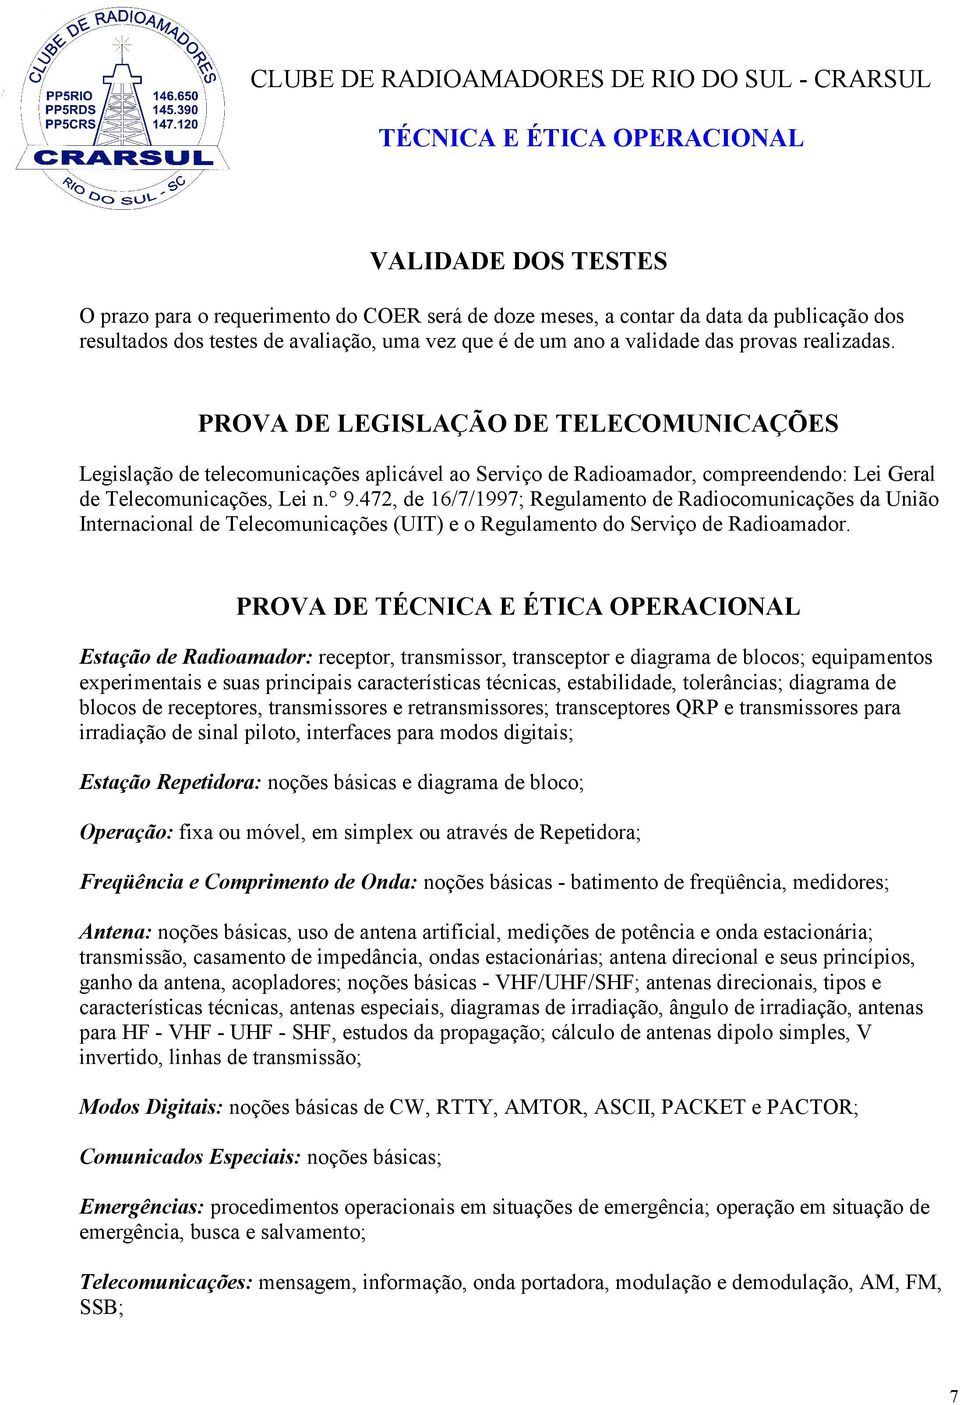 472, de 16/7/1997; Regulamento de Radiocomunicações da União Internacional de Telecomunicações (UIT) e o Regulamento do Serviço de Radioamador.